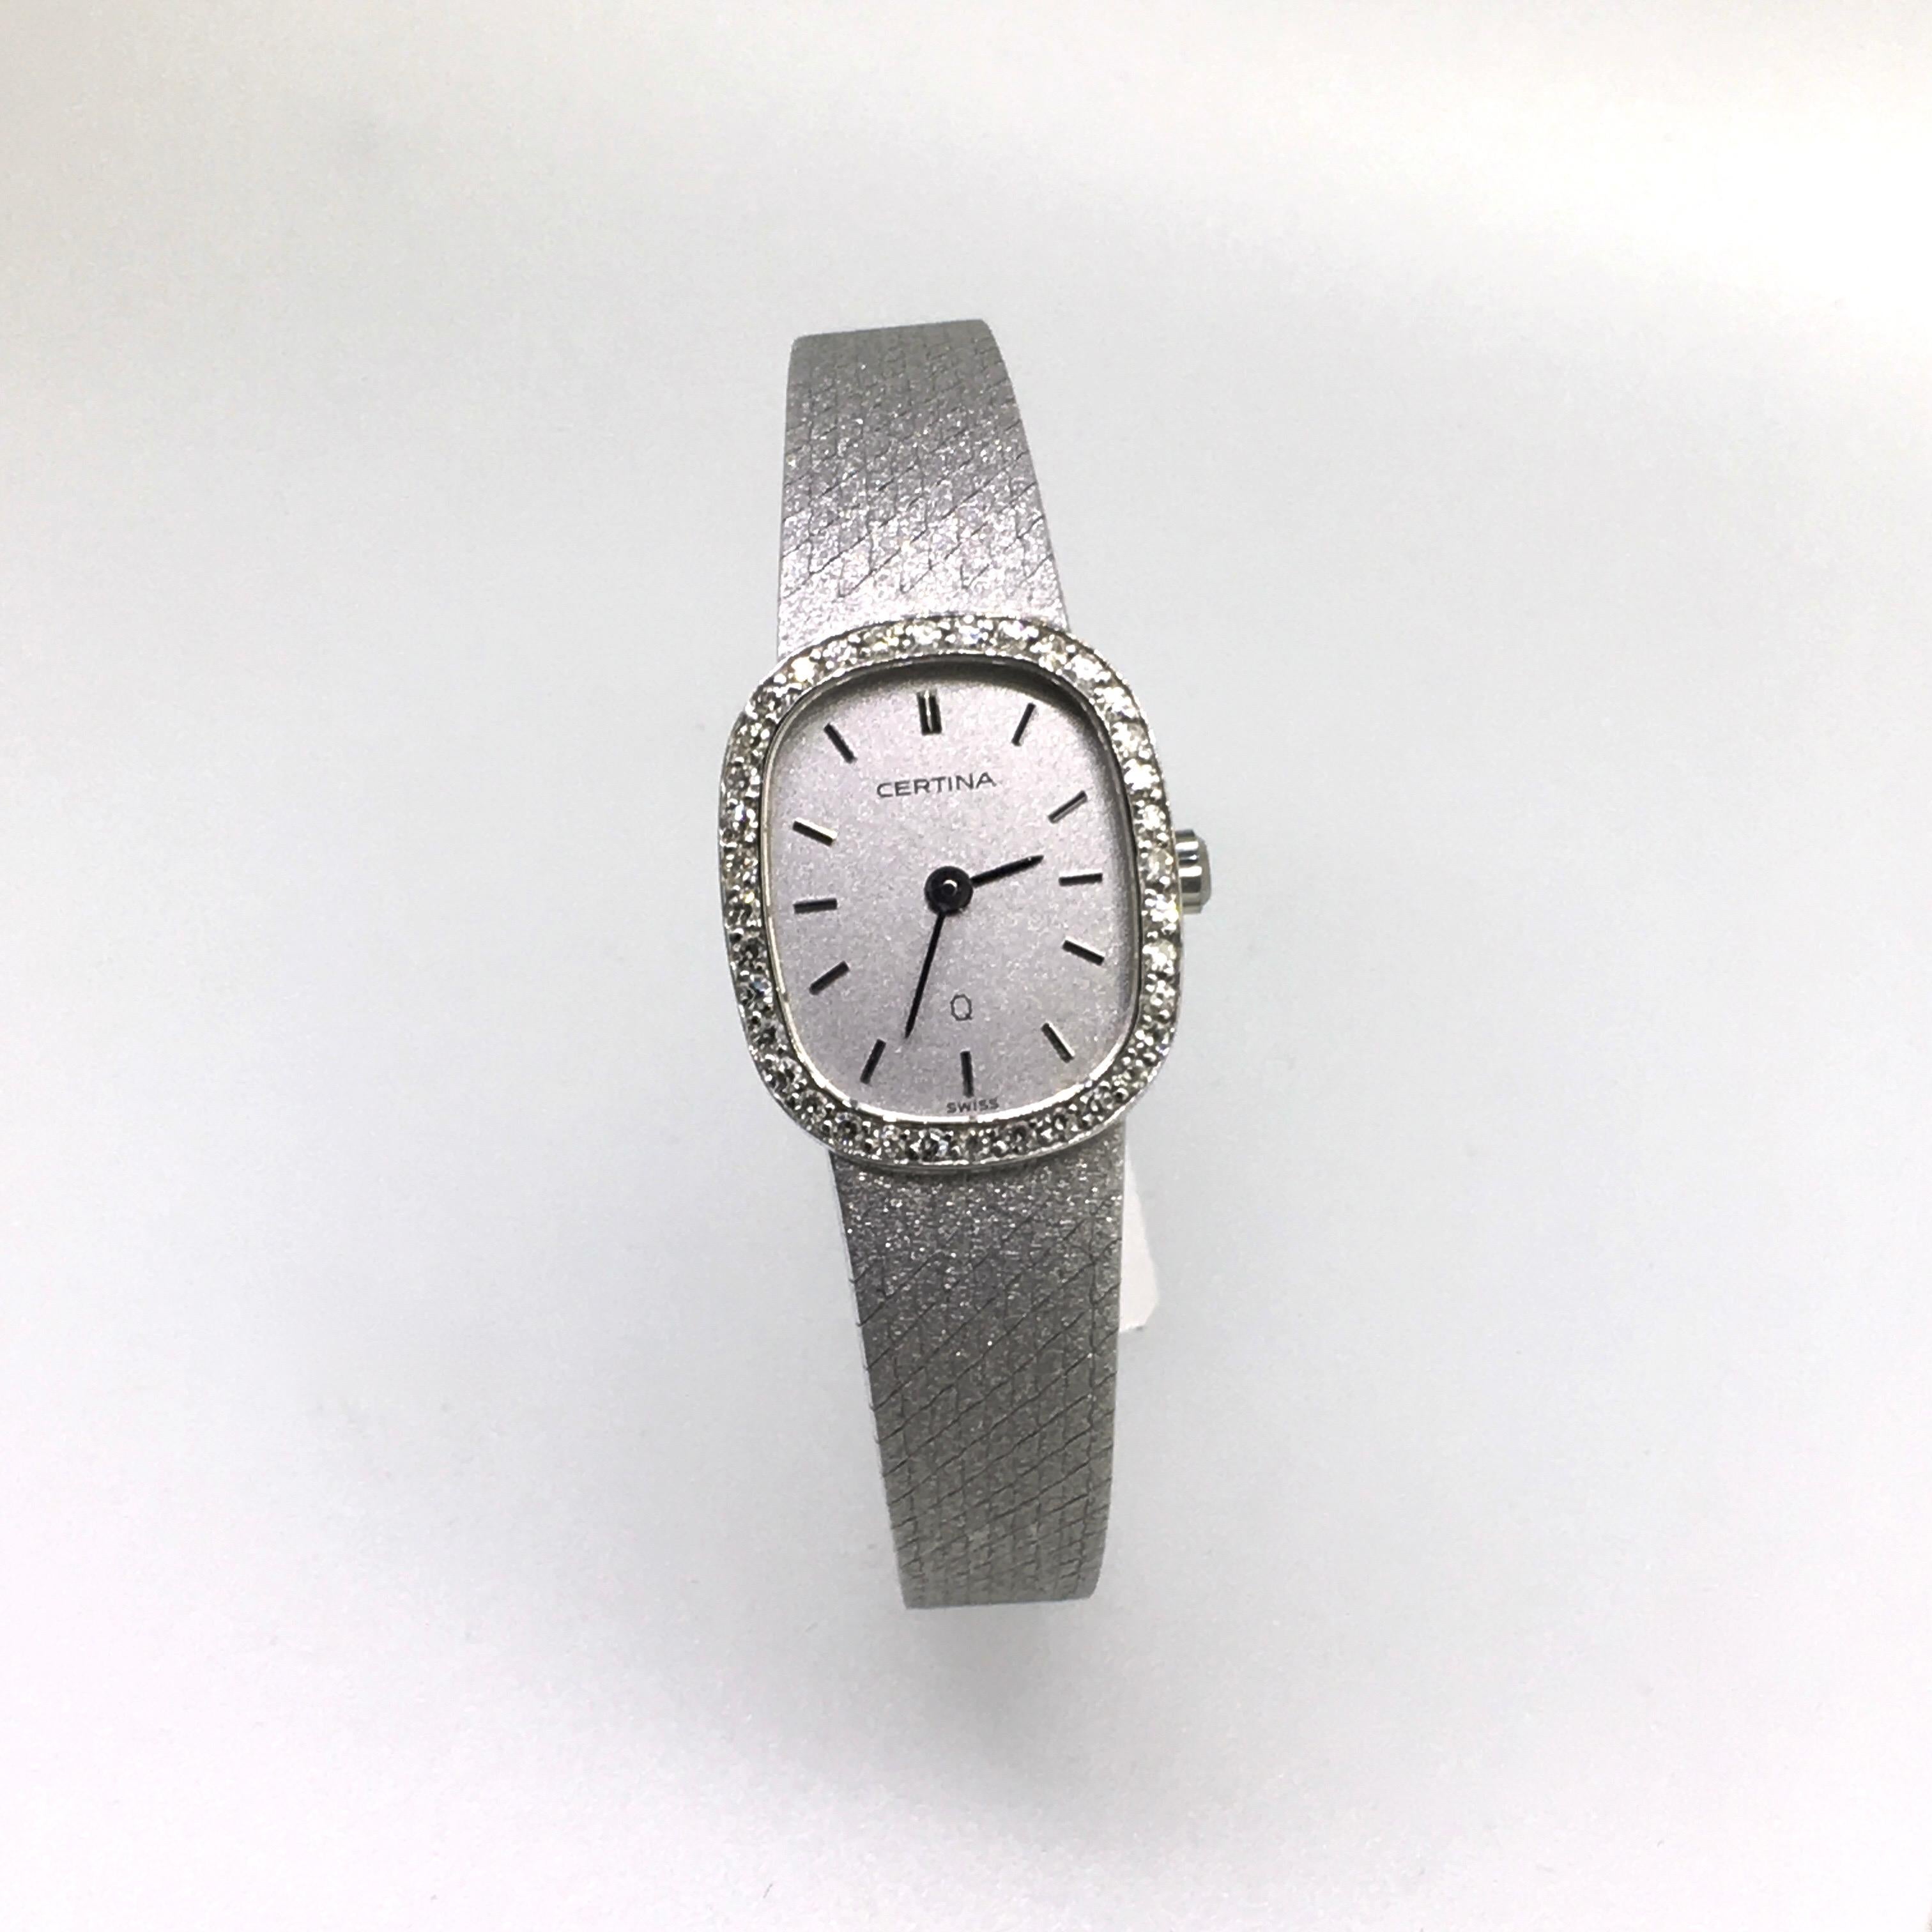 Watch, White Gold, Diamonds, Lady, Certina, Bracelet Watch, Vintage, 1983 1